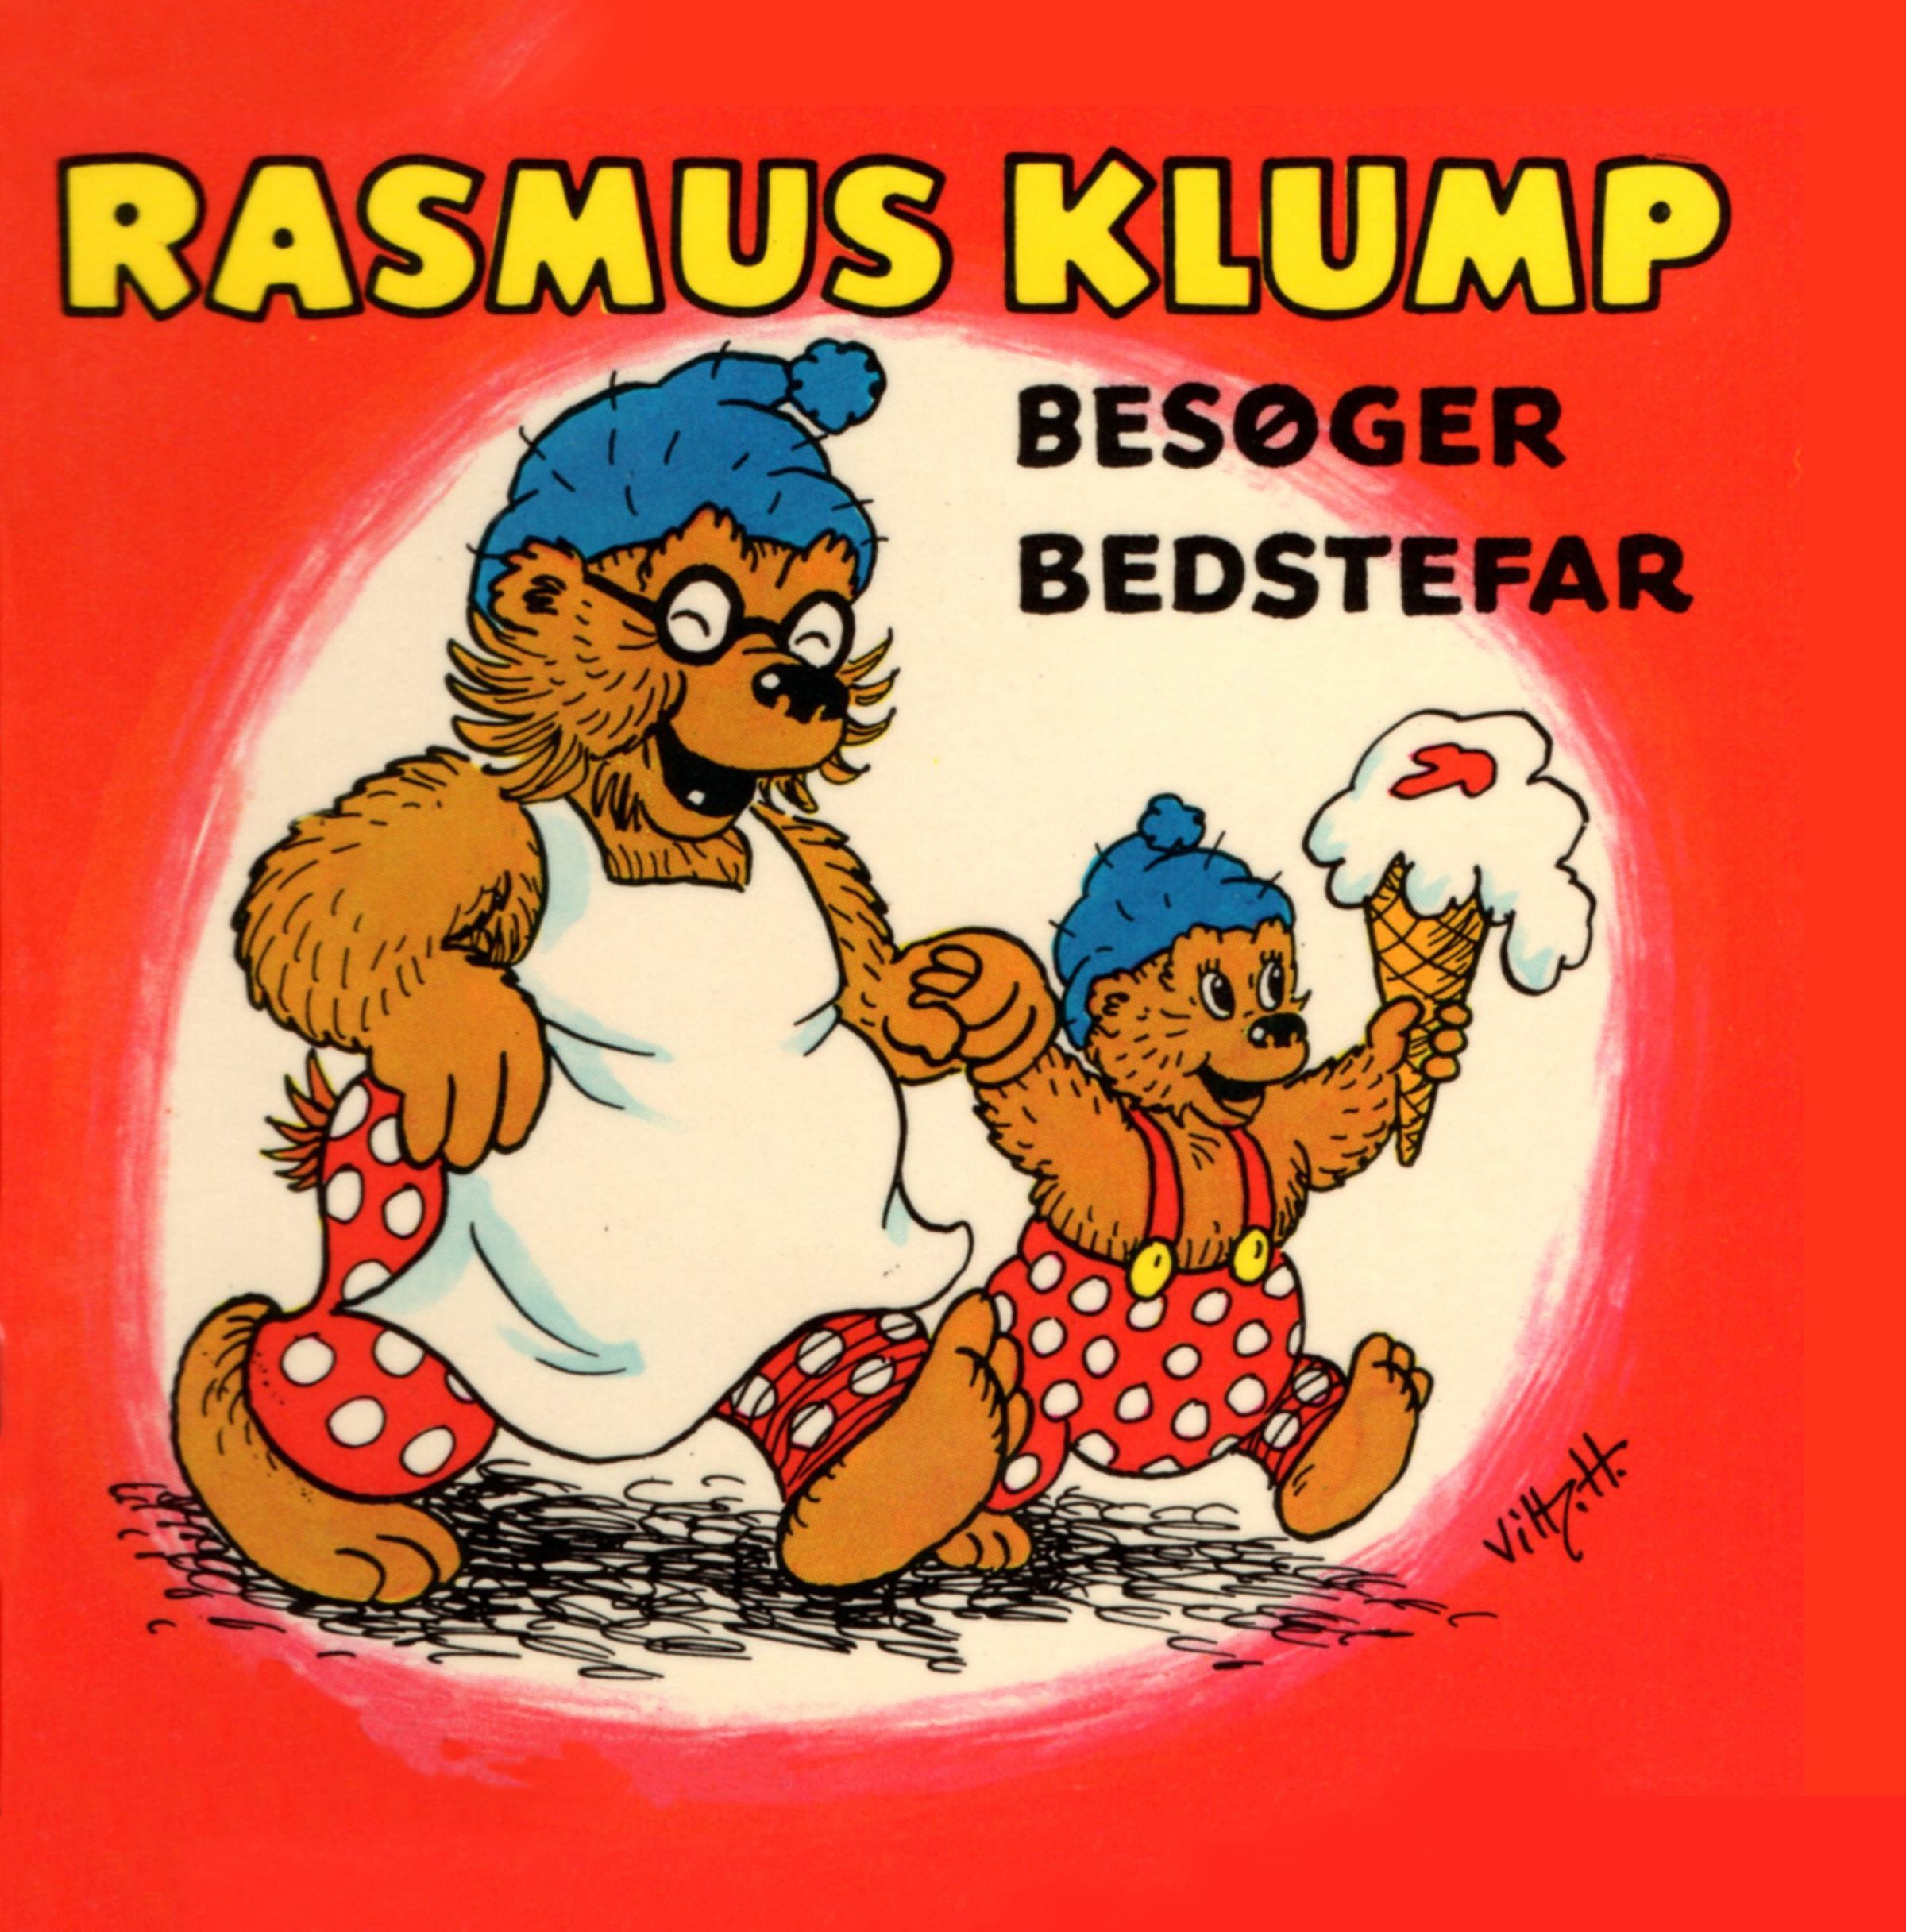 Rasmus Klump besøger bedstefar, lydbog af Carla Og Vilh. Hansen